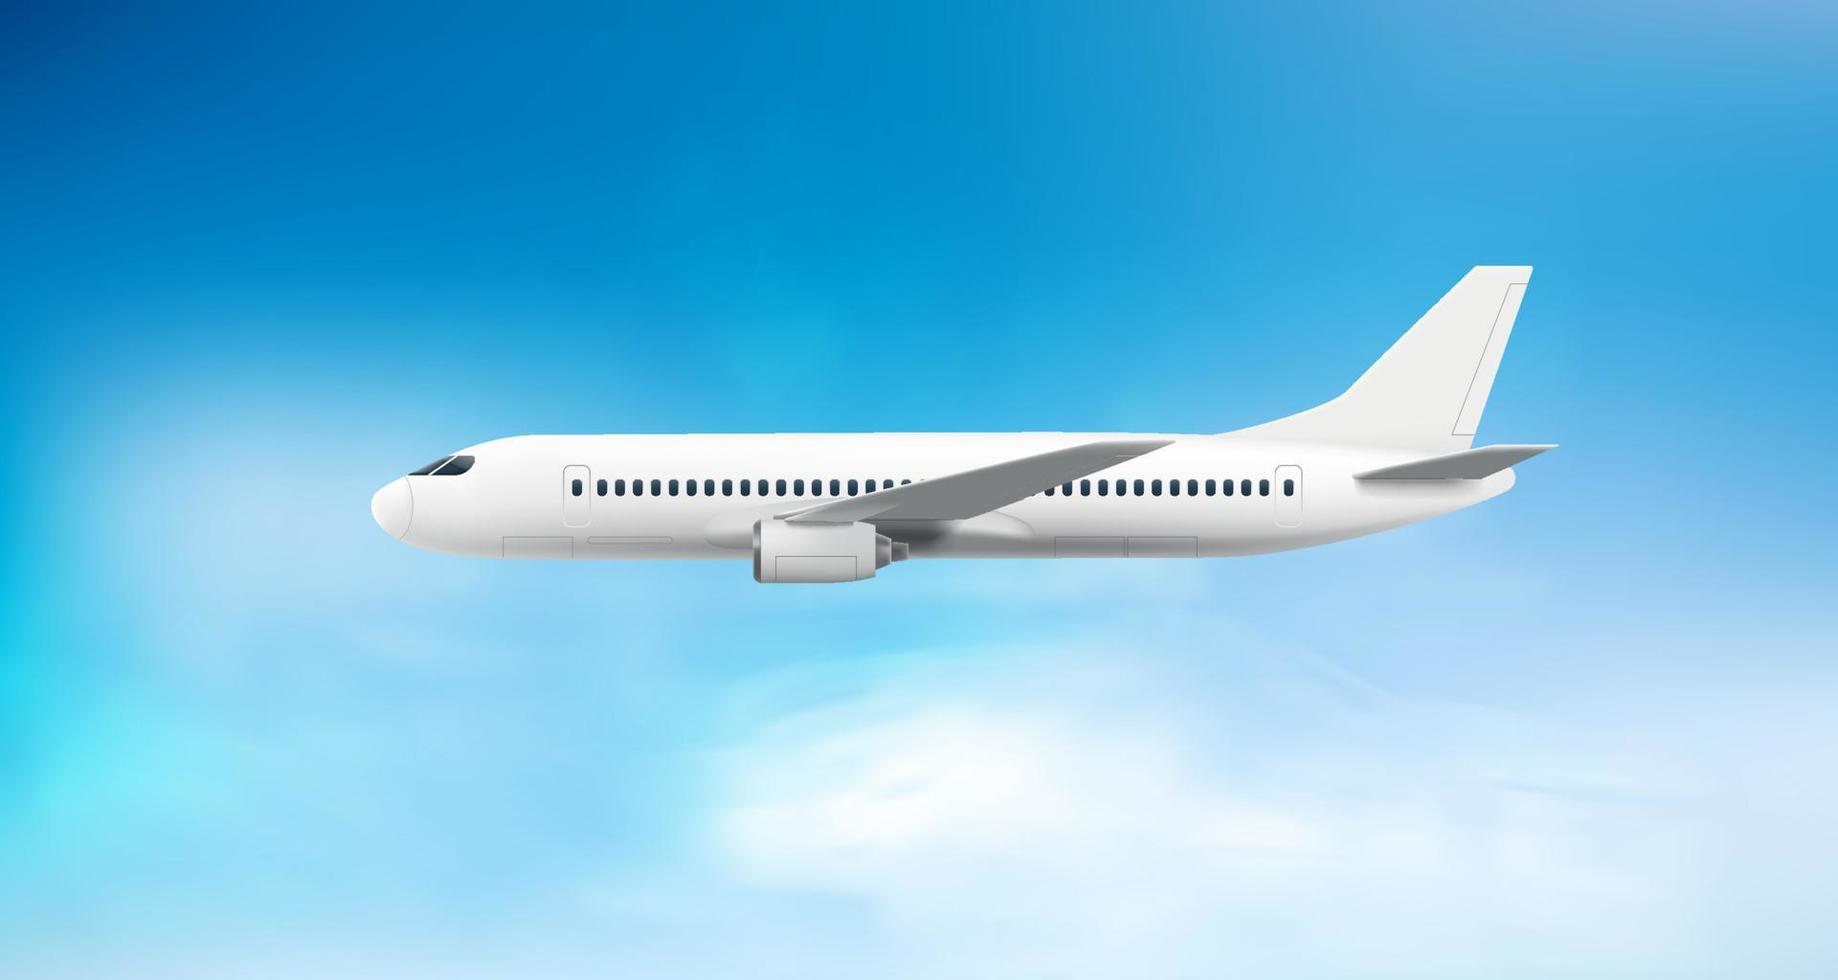 voando avião moderno voando no céu nublado. conceito de viagem aérea. ilustração em vetor 3D